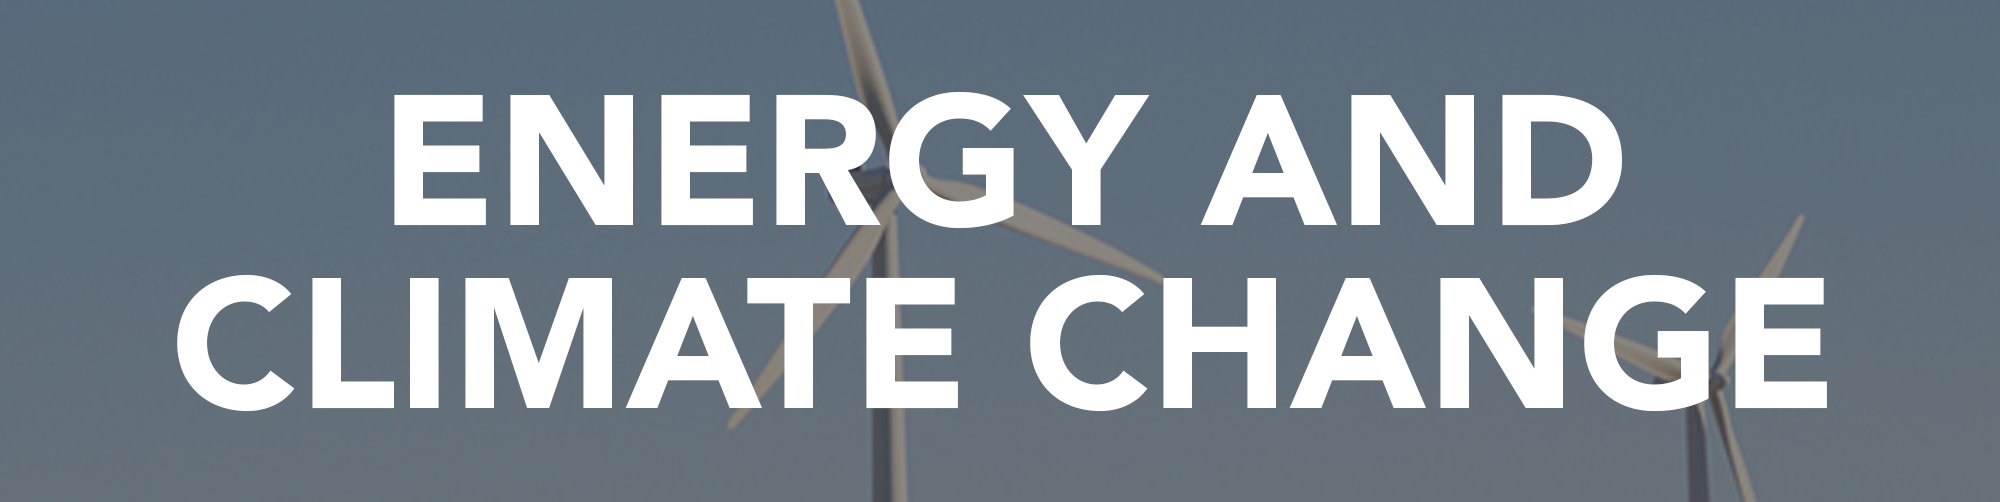 エネルギーと気候変動に関する情報と記事